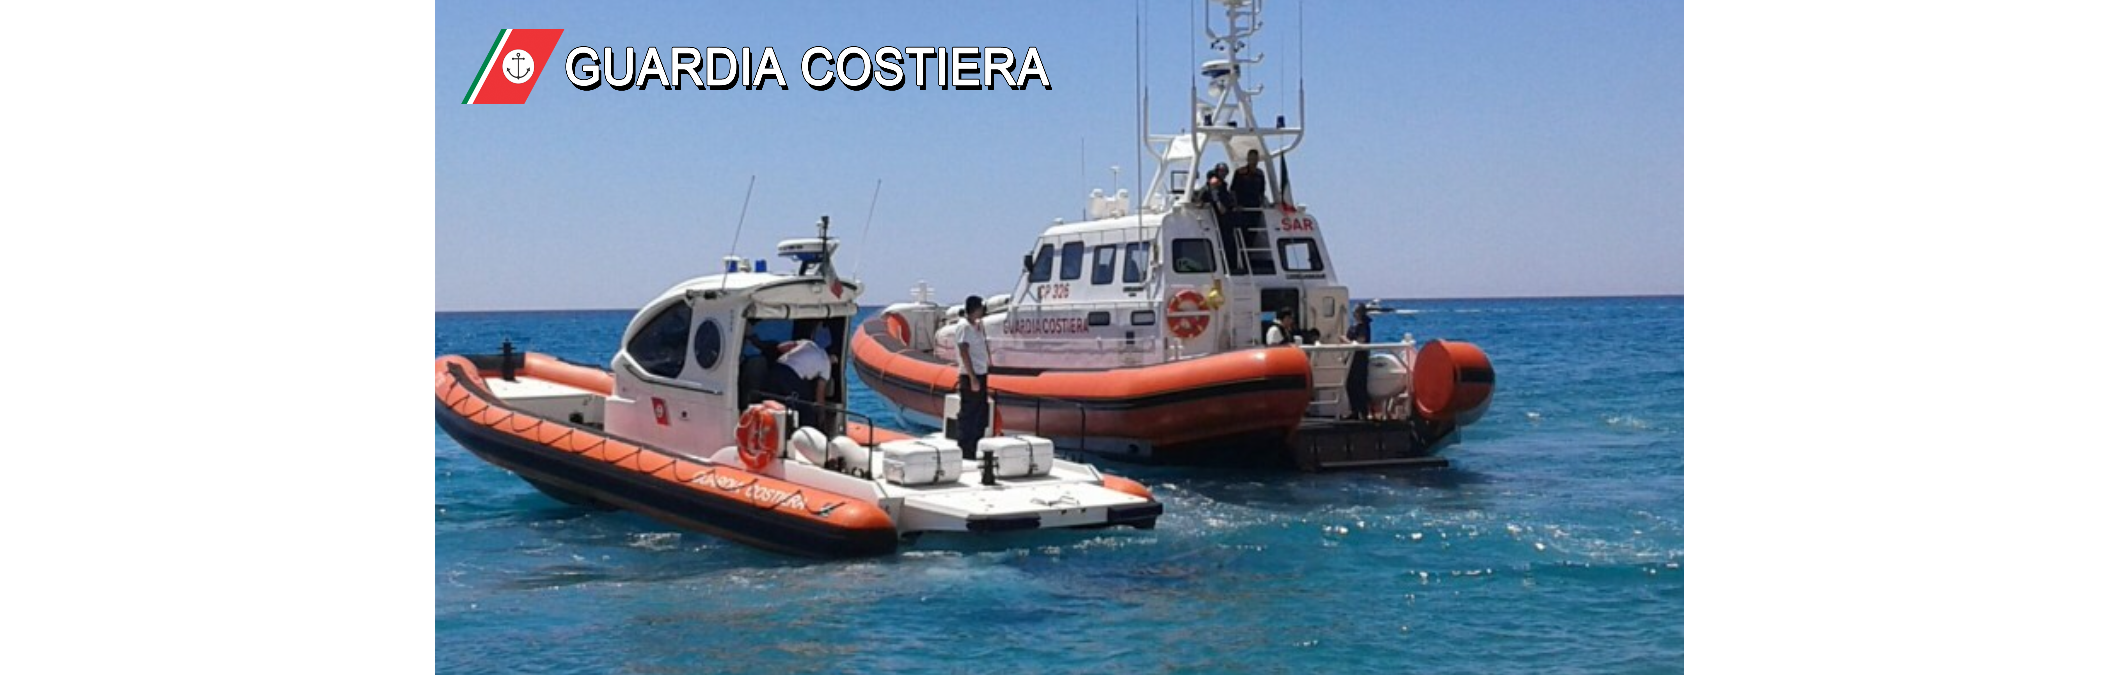 Roccella Jonica, la Guardia costiera soccorre bagnante con kite-surf in difficoltà